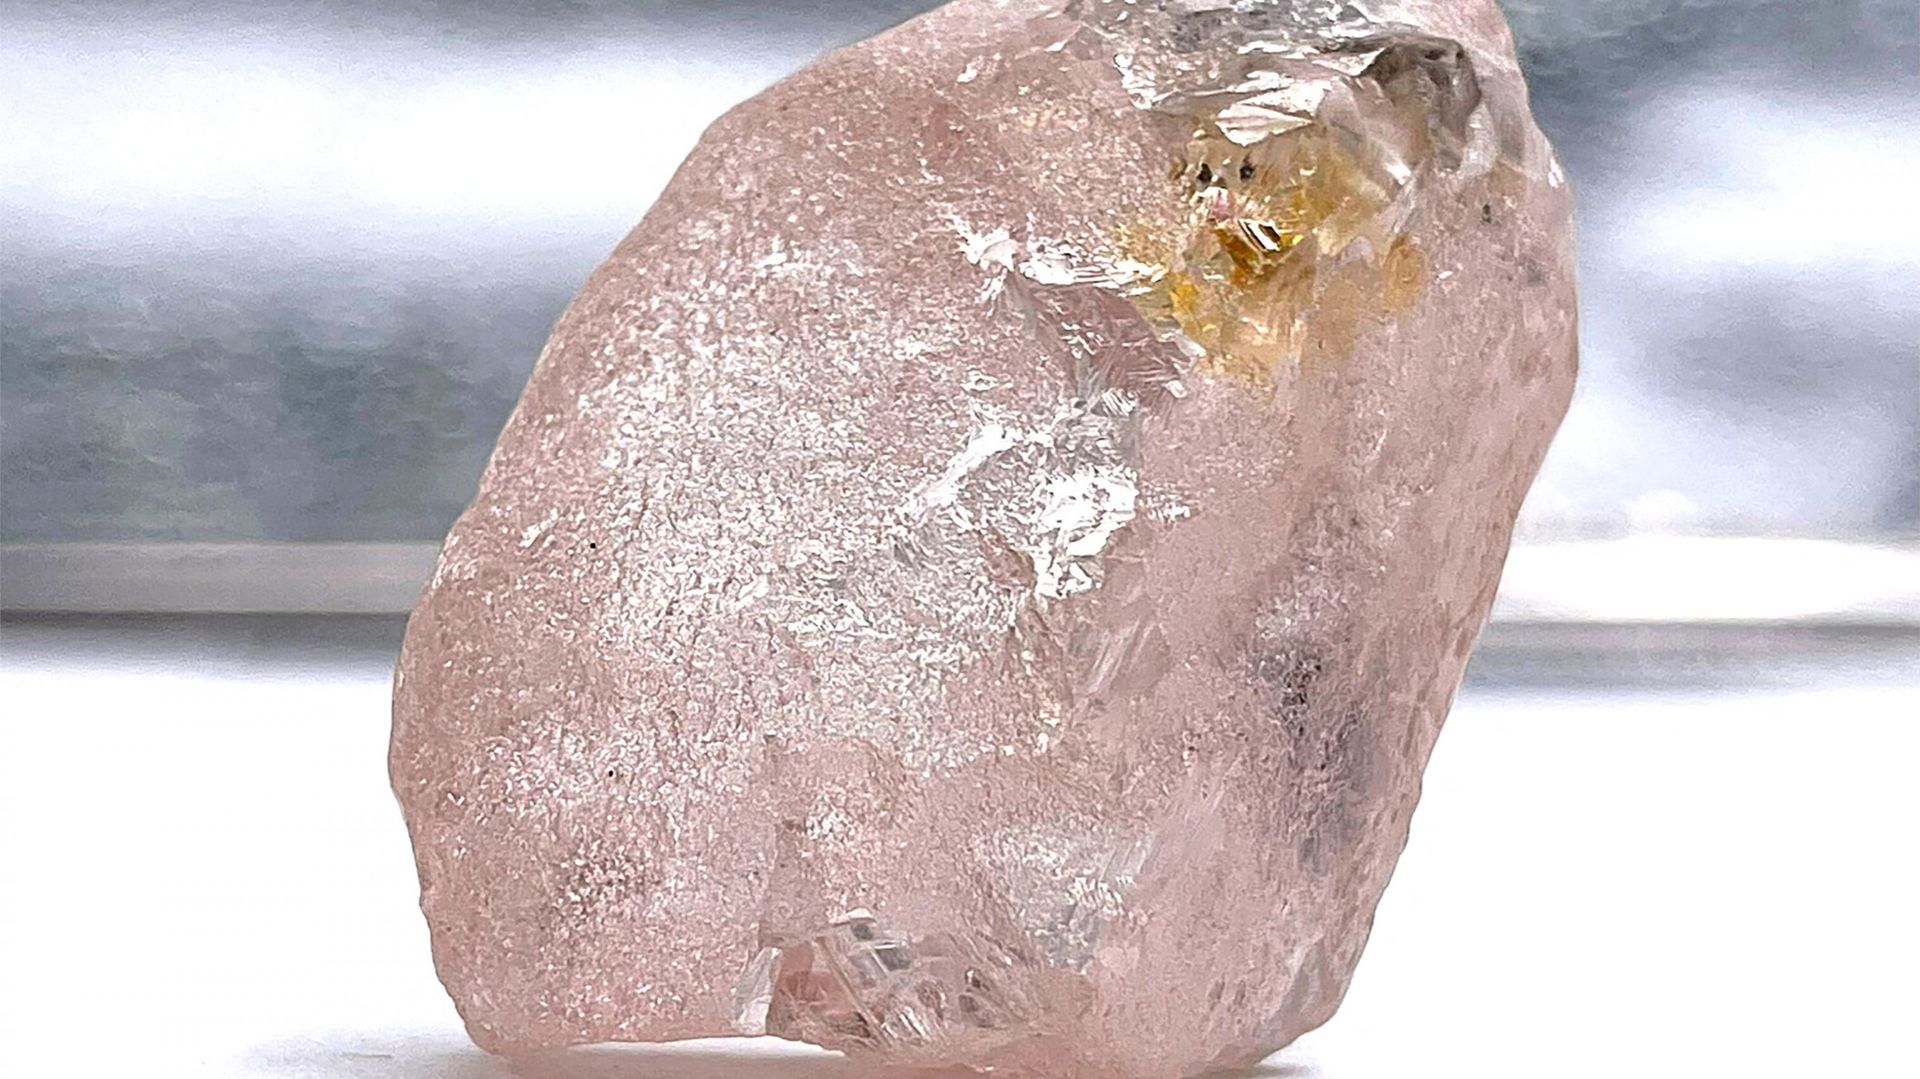 Cette photo non datée, publiée par Lucapa Diamond Company Limited le 27 juillet 2022, montre un diamant rose de 170 carats, surnommé "Lulo Rose", découvert dans la mine de Lulo, dans la région nord-est de l’Angola, riche en diamants.